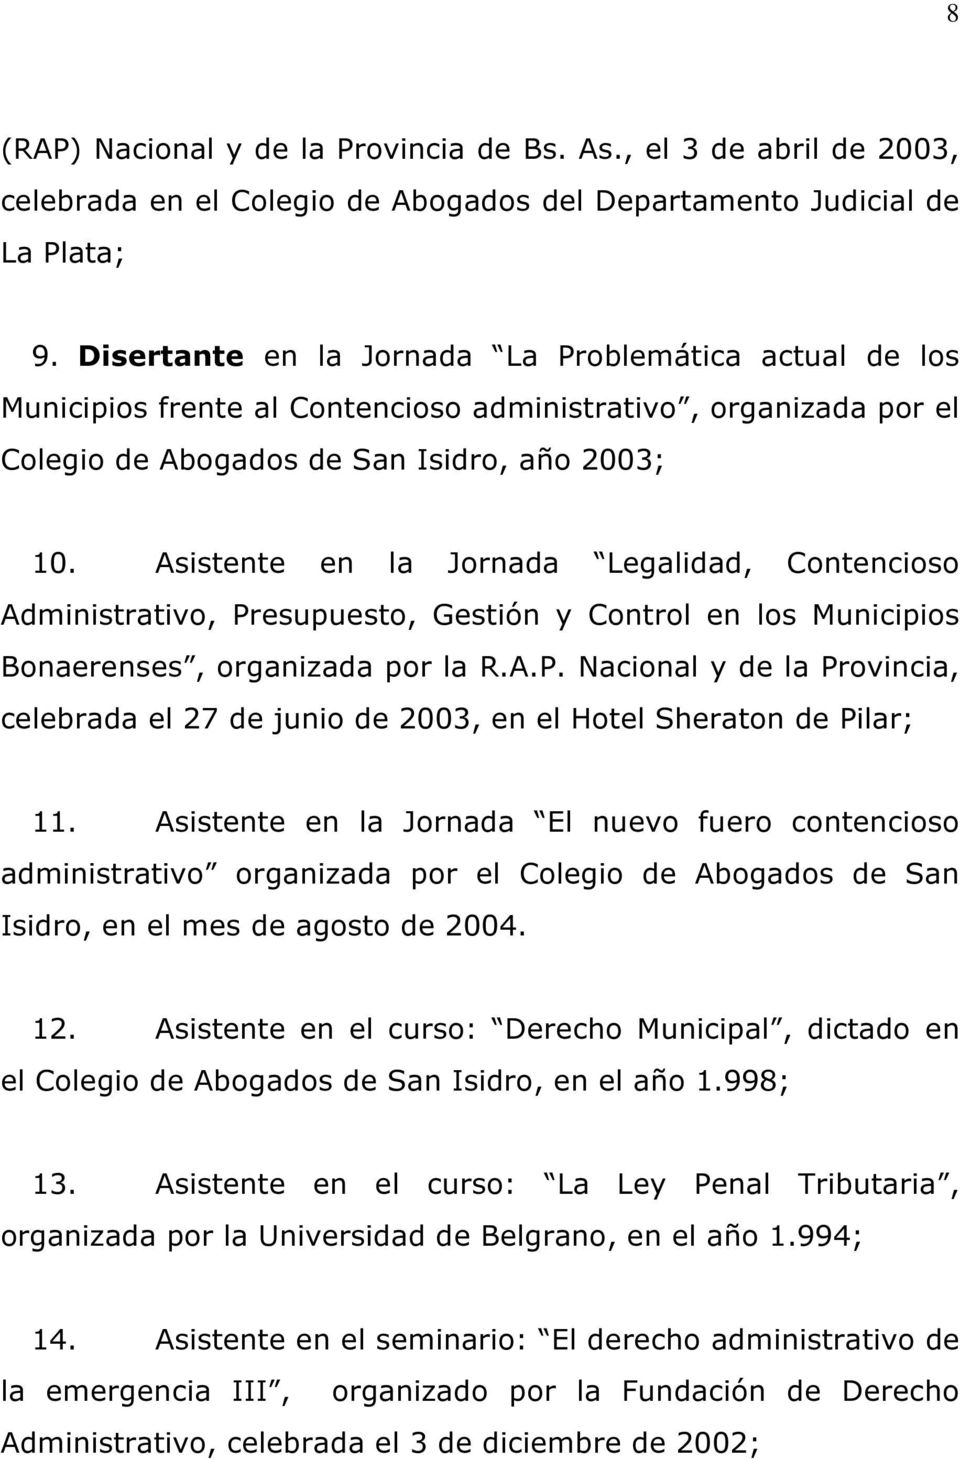 Asistente en la Jornada Legalidad, Contencioso Administrativo, Presupuesto, Gestión y Control en los Municipios Bonaerenses, organizada por la R.A.P. Nacional y de la Provincia, celebrada el 27 de junio de 2003, en el Hotel Sheraton de Pilar; 11.